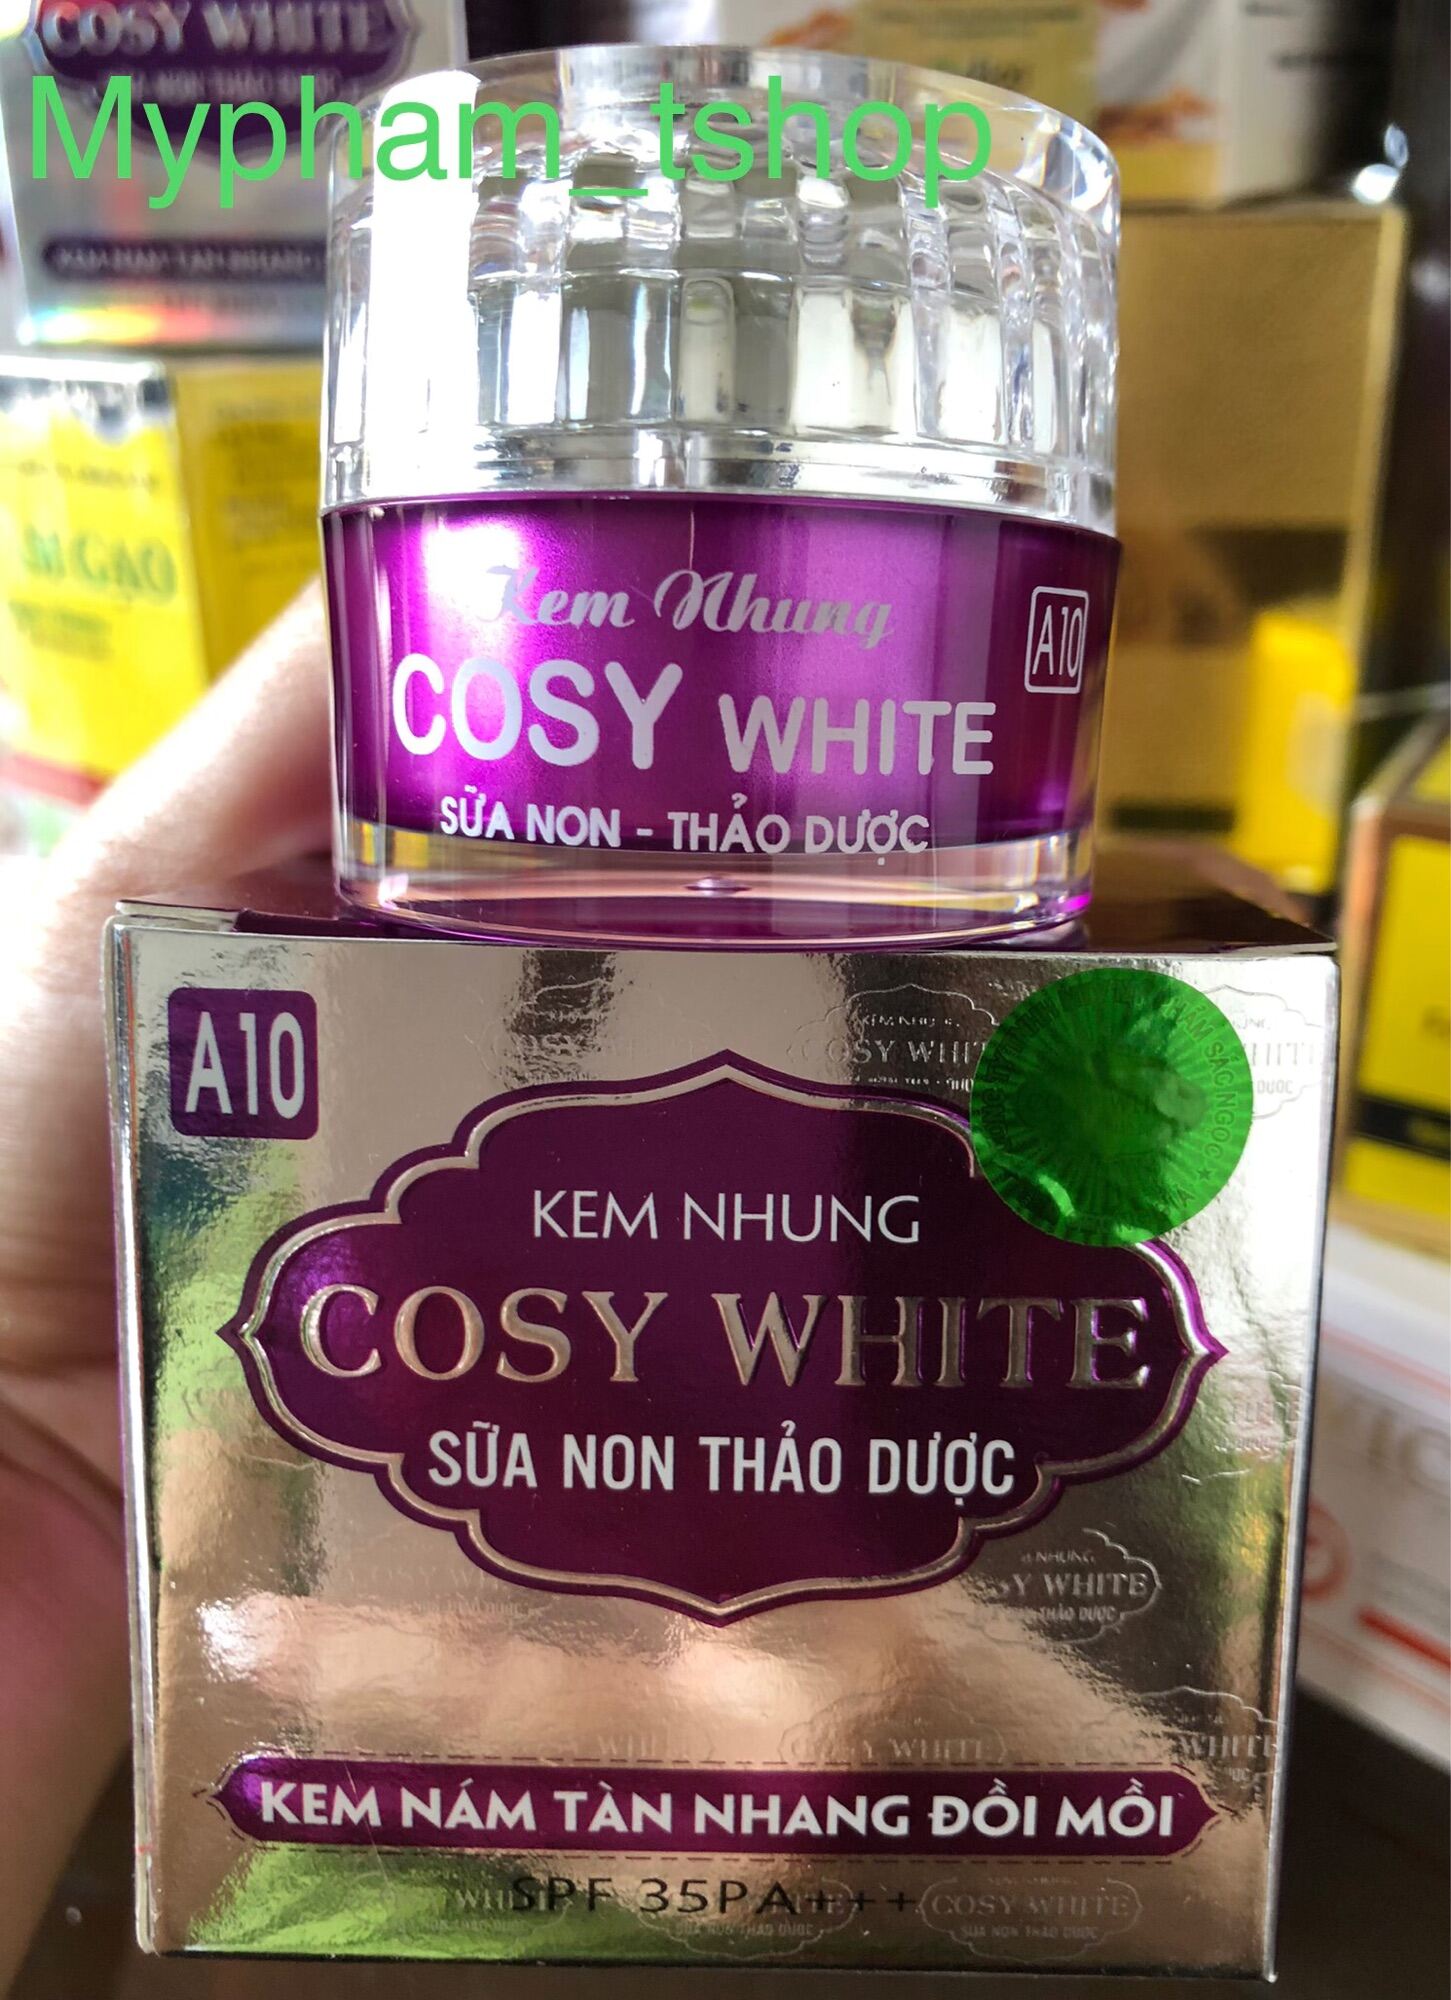 Kem Nhung Sữa Non Thảo Dược Cosy White Ngừa Nám Tàn Nhang Đồi Mồi A10 thumbnail